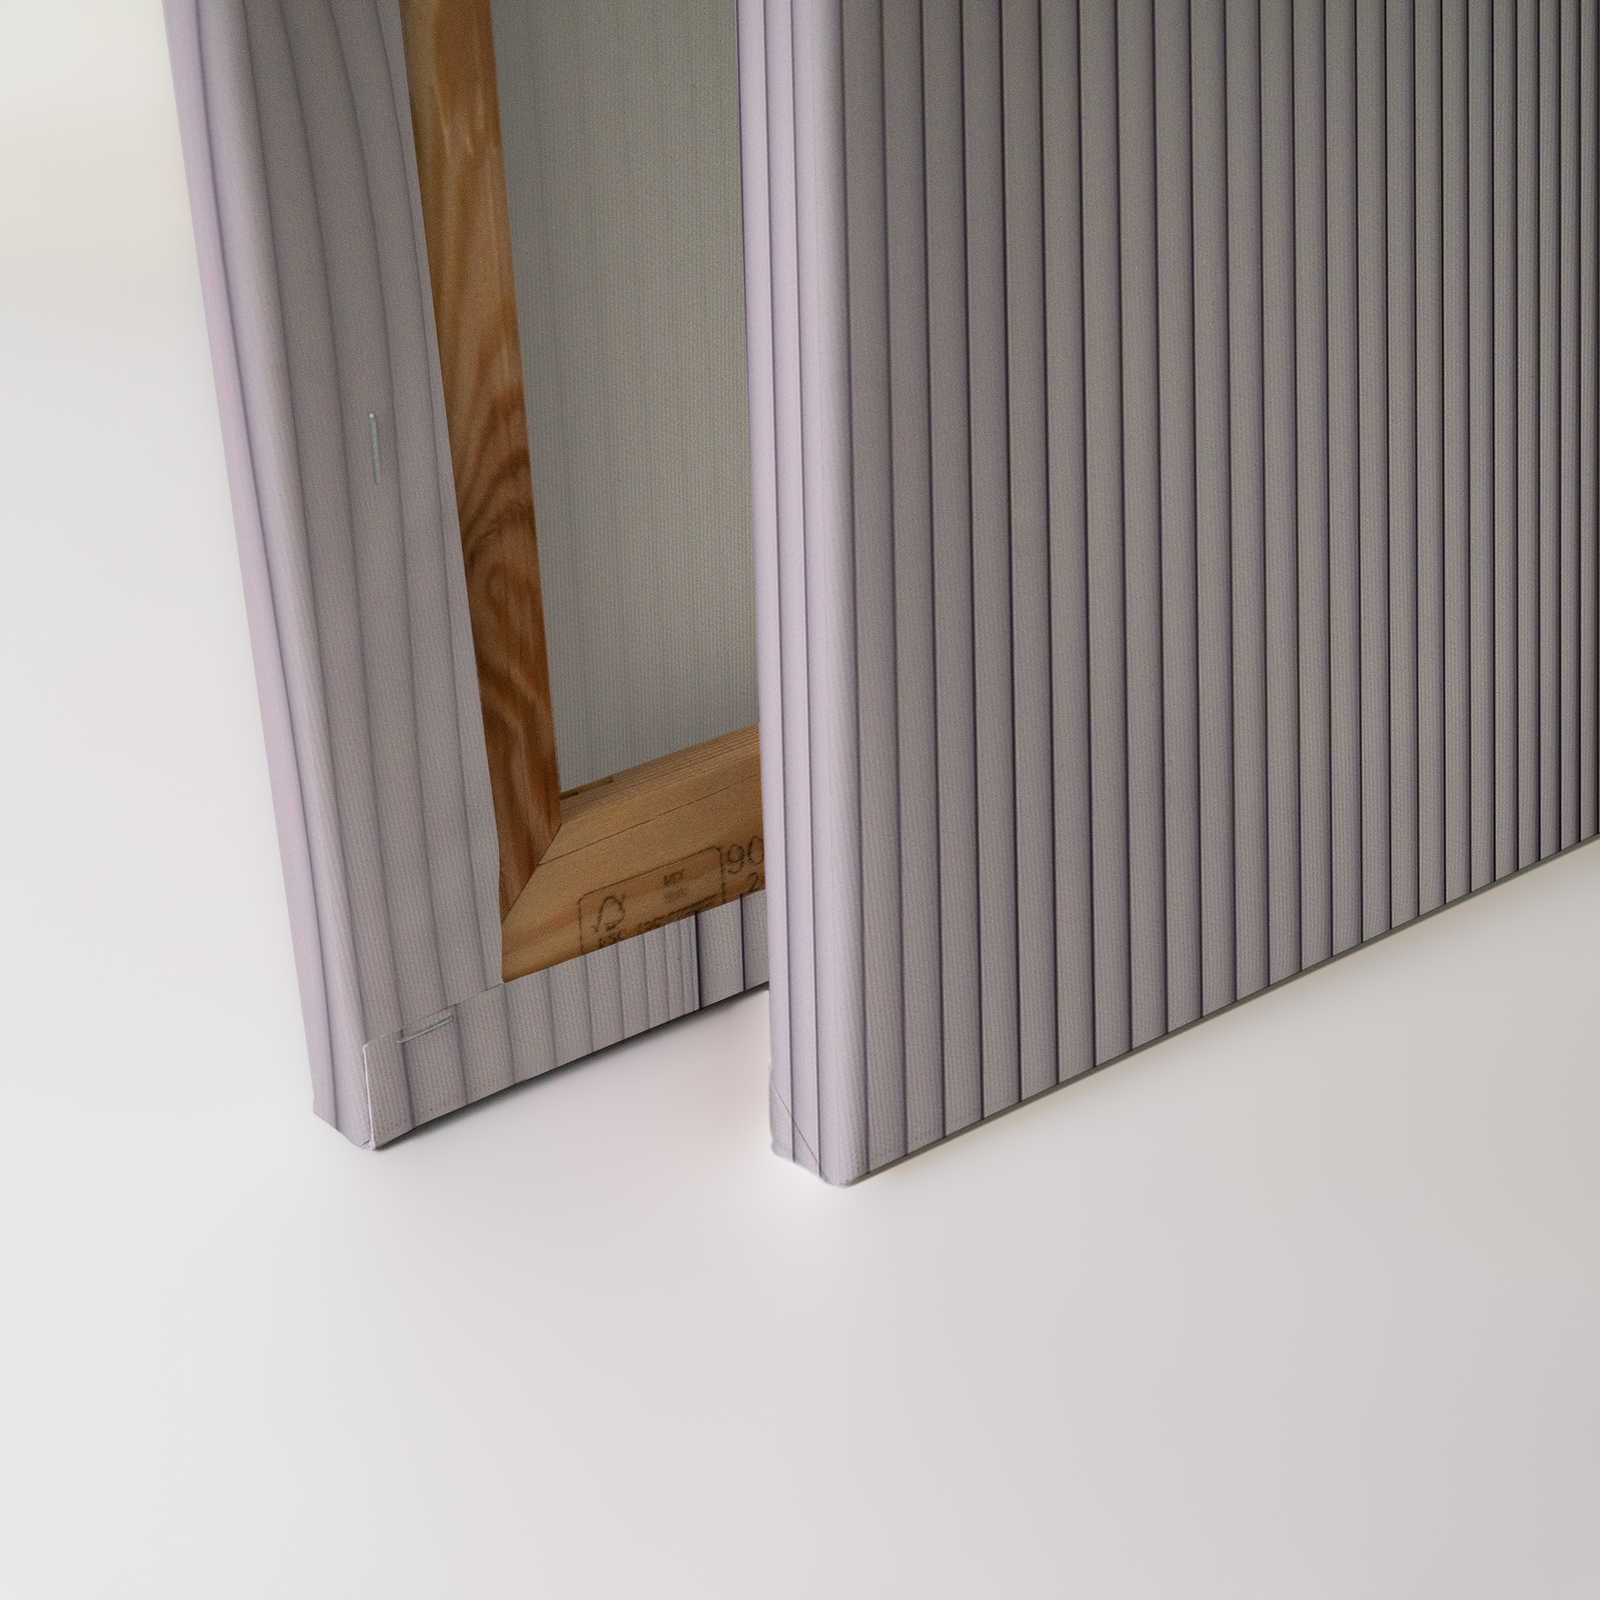             Magic Wall 1 - Lienzo a rayas efecto ilusión 3D, morado y blanco - 0,90 m x 0,60 m
        